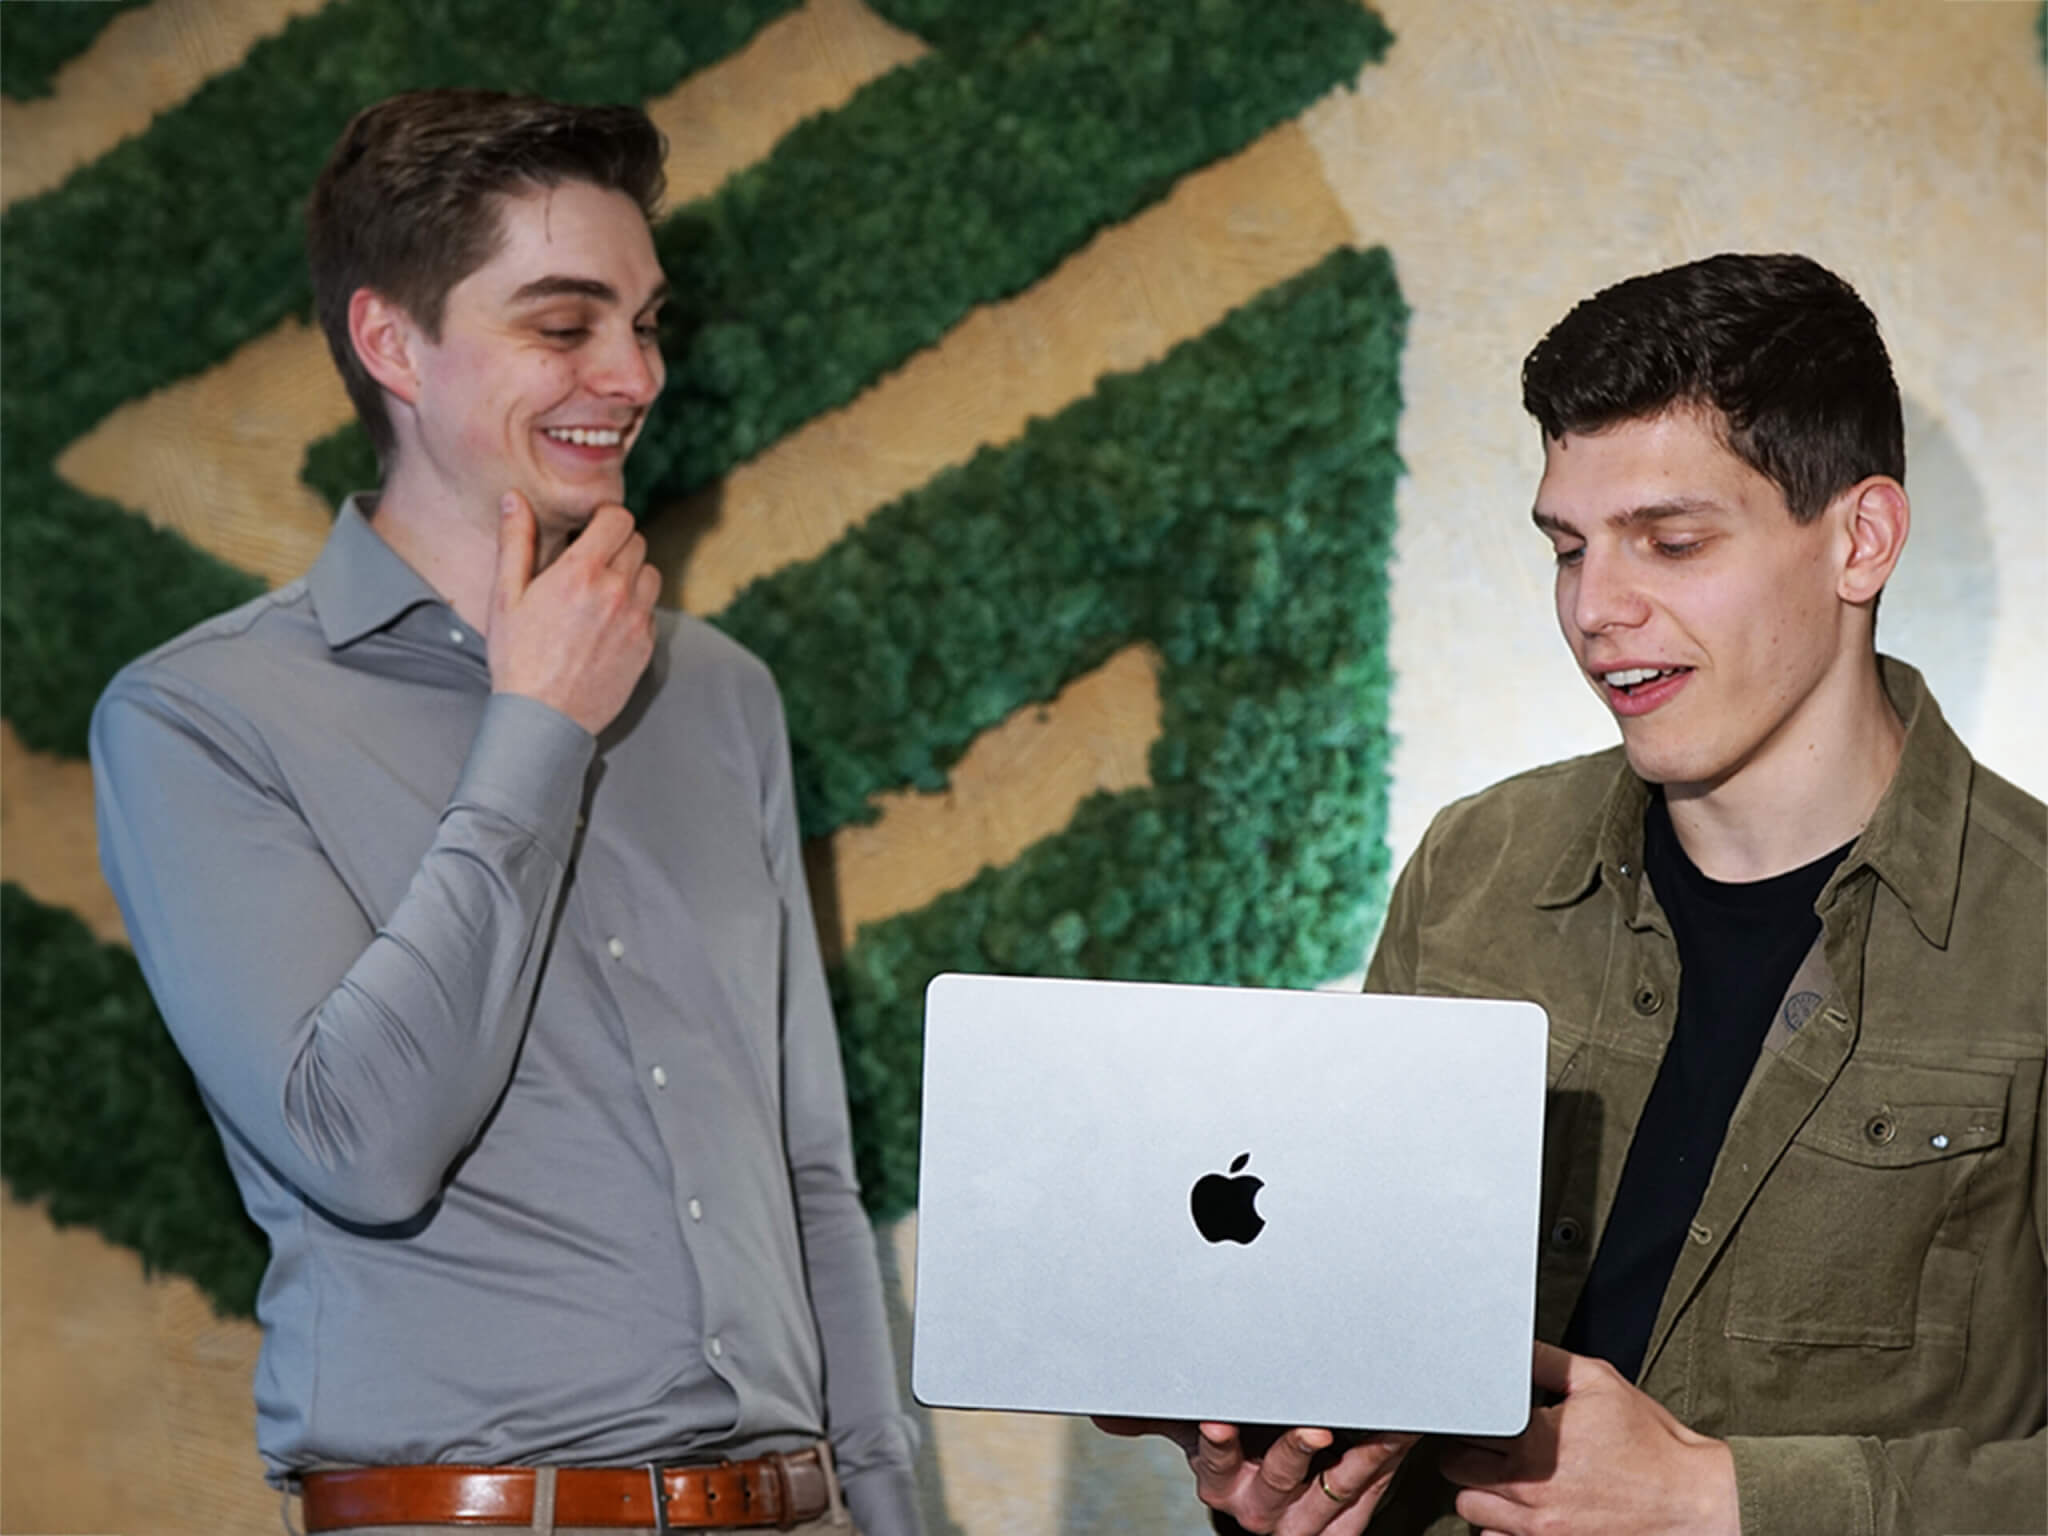 Twee collega's die werken bij Surelock en kijken naar iets op de macbook